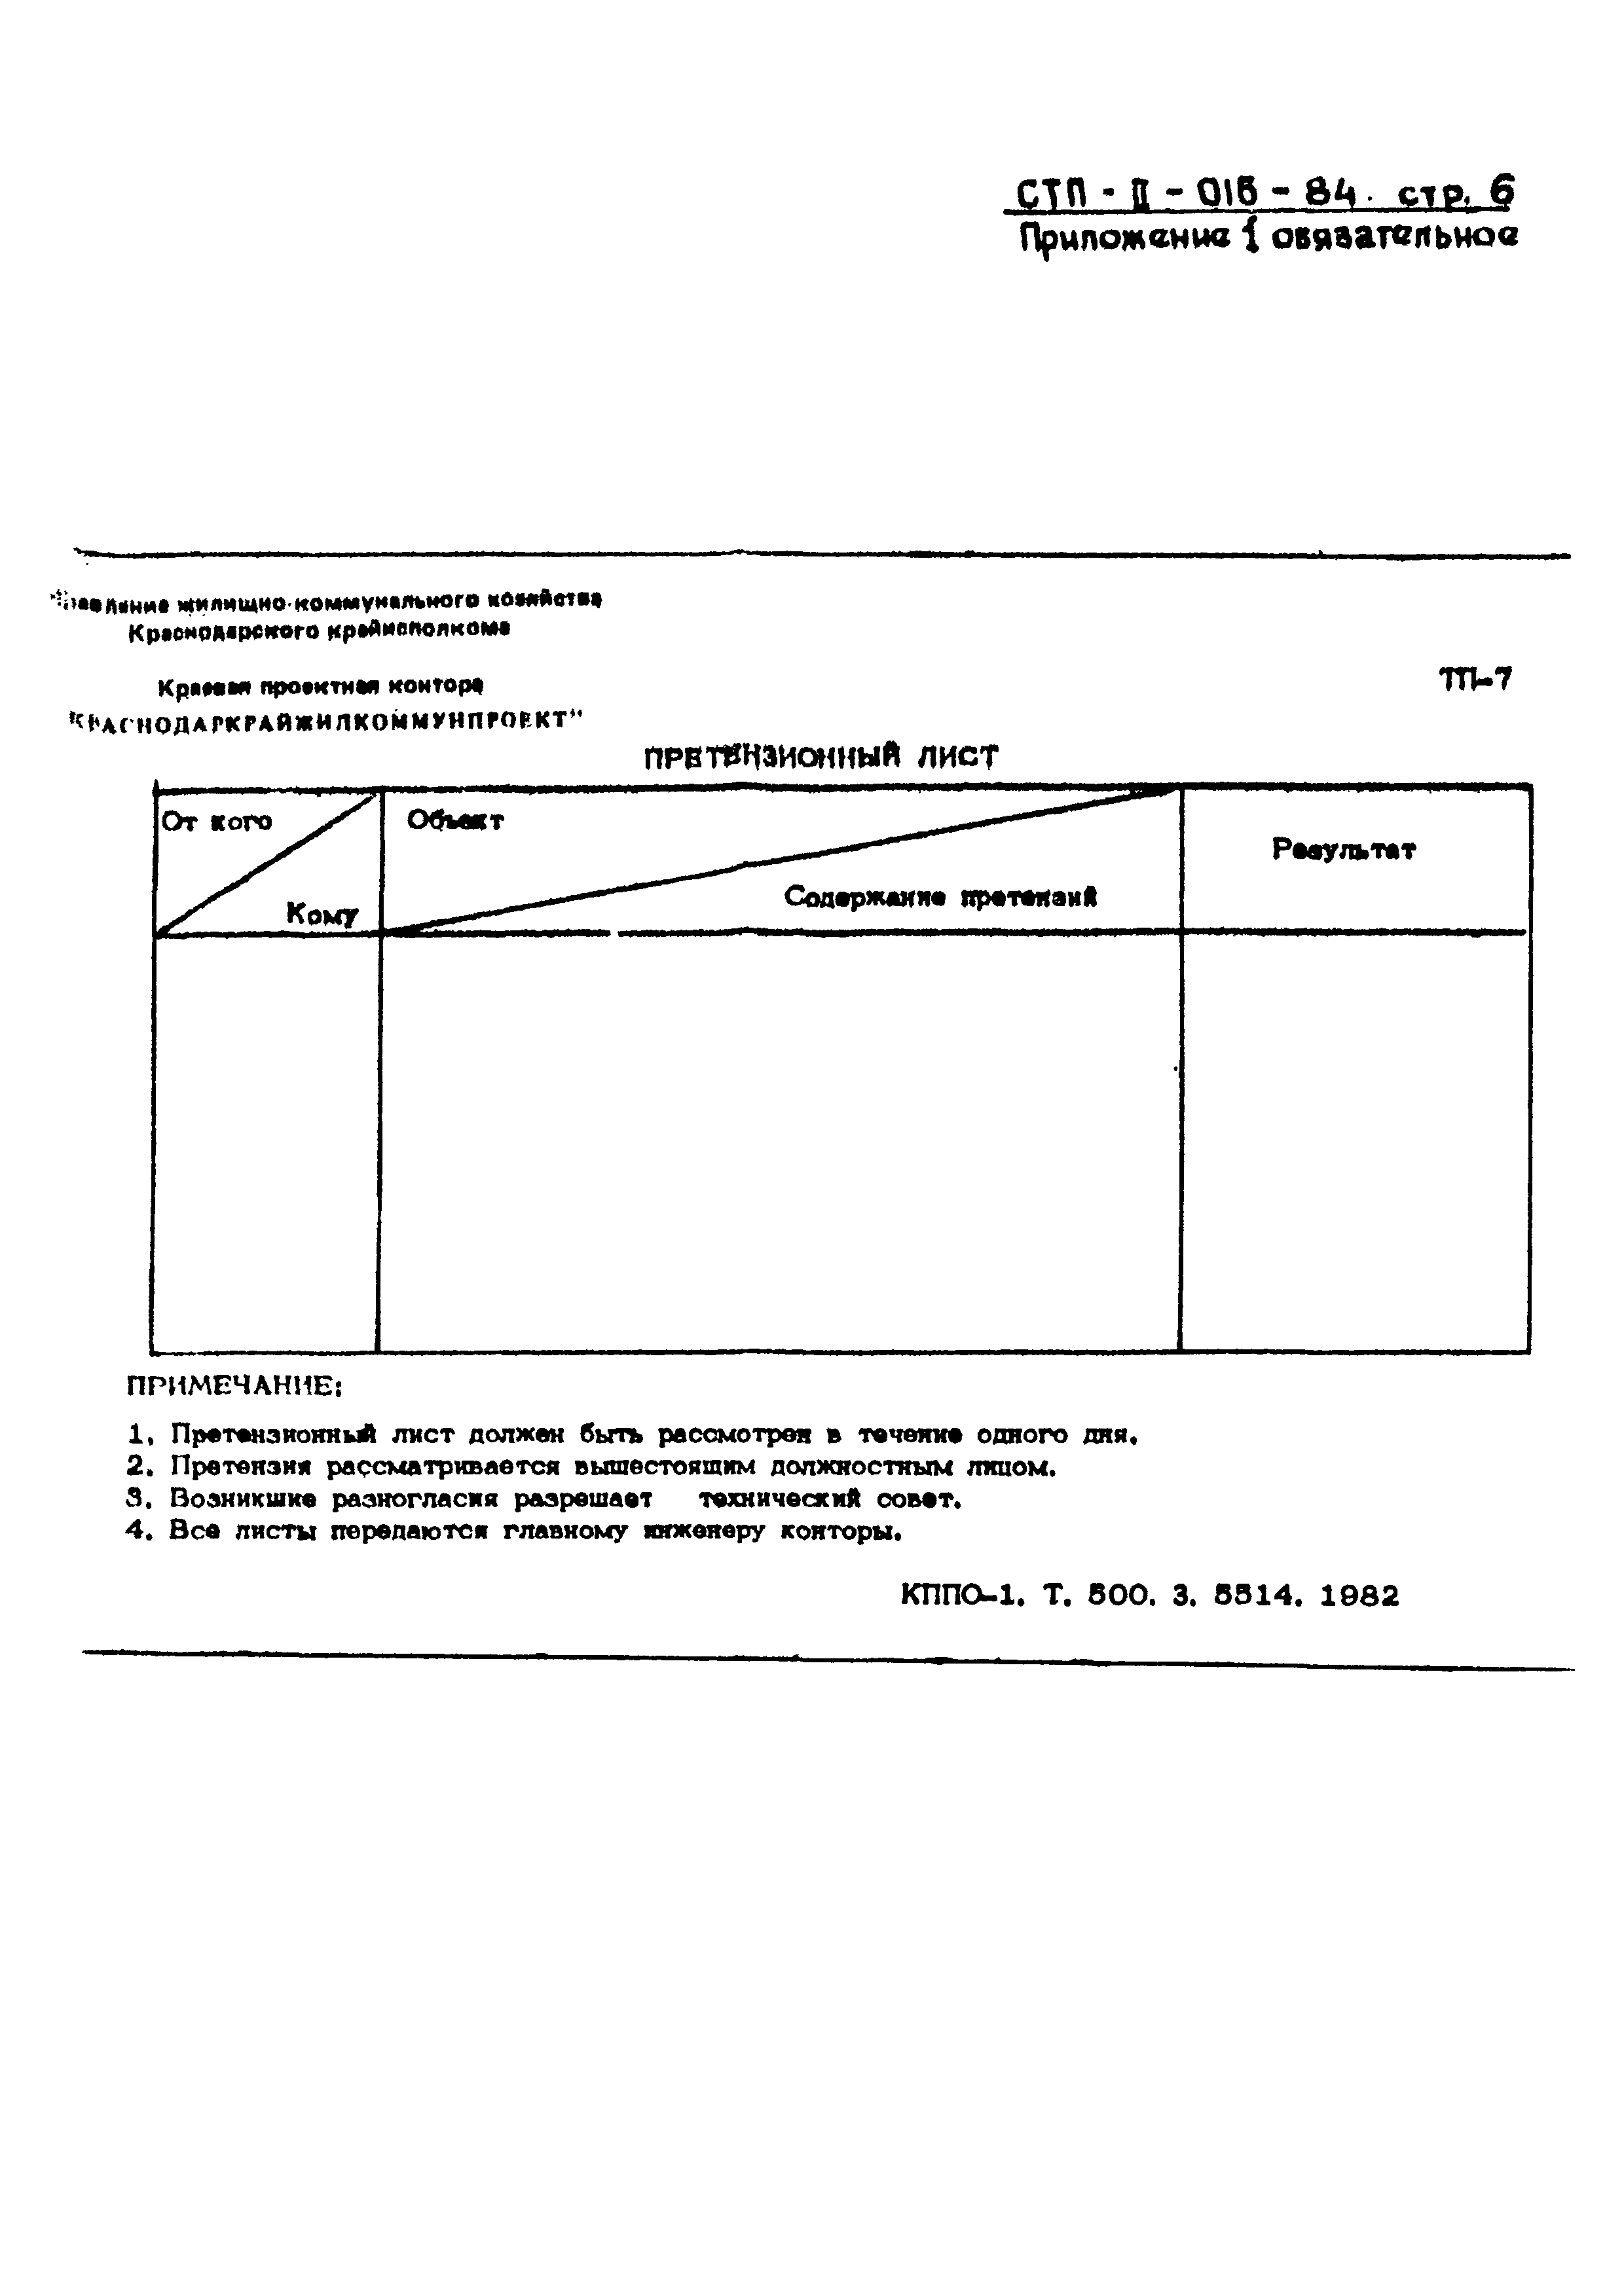 СТП II-016-84